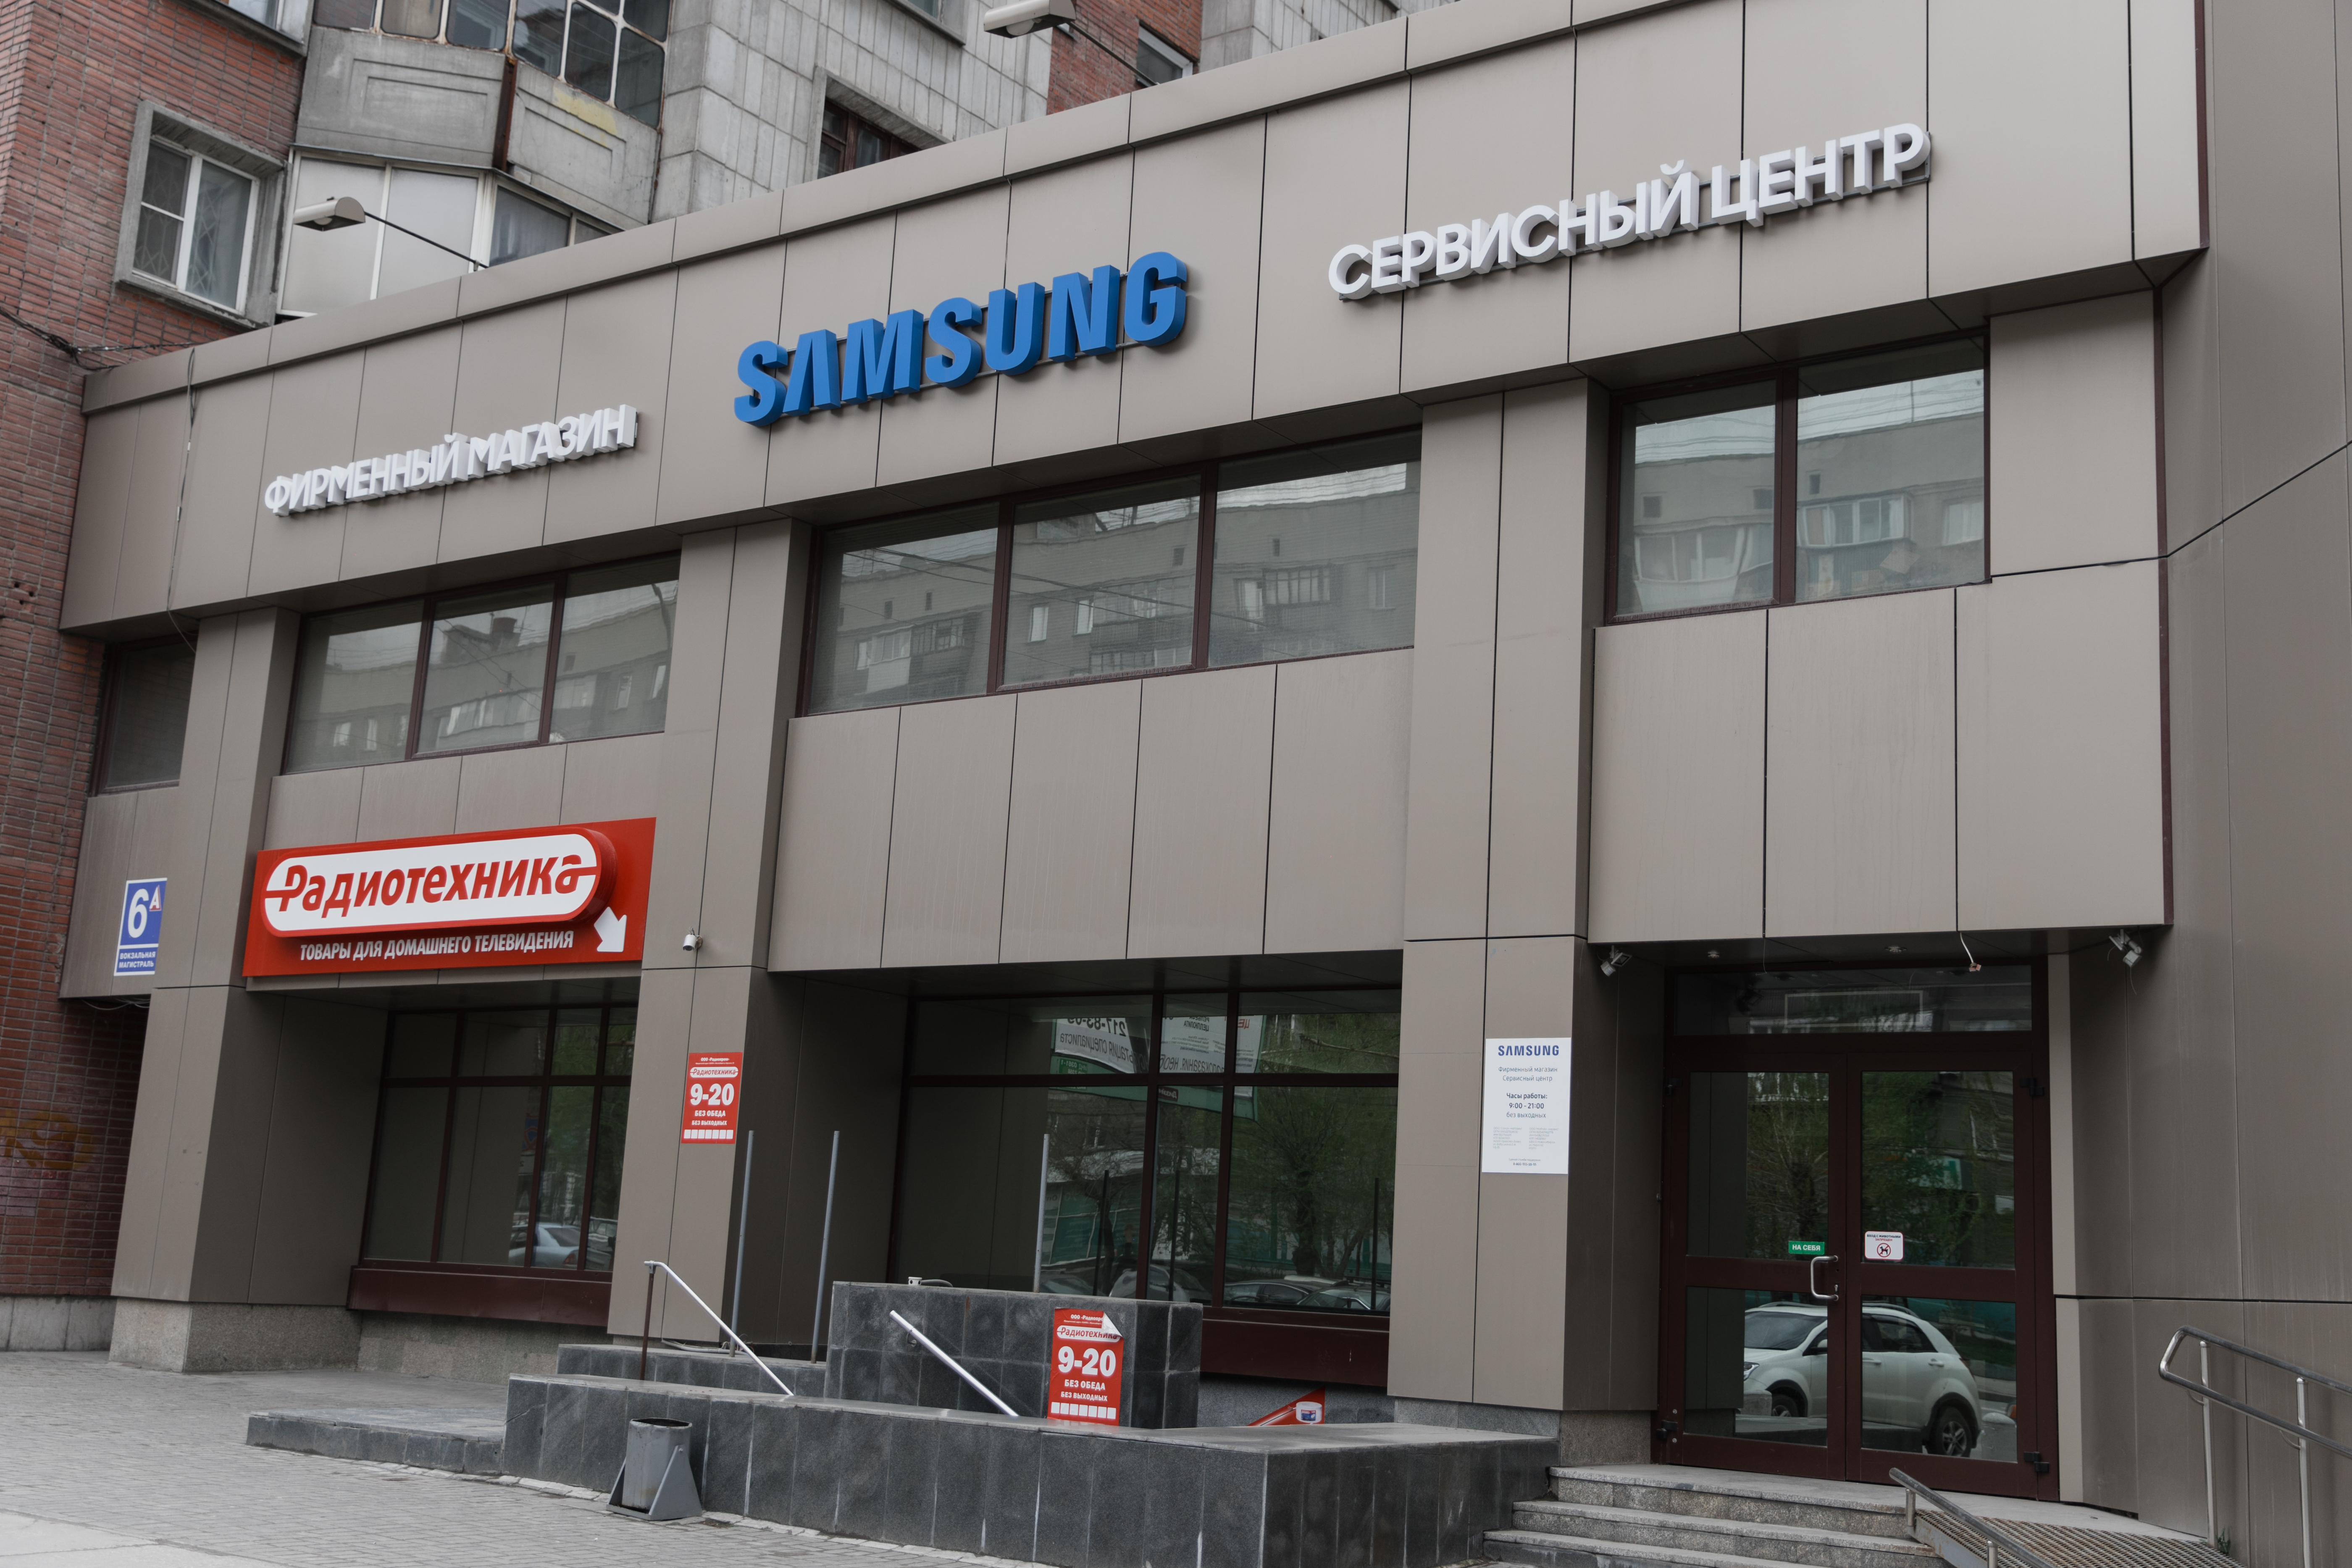 Самсунг сервисный центр remservice. Сервисный центр. Сервисный центр самсунг в Новосибирске. Samsung сервис центр. СЦ Samsung.